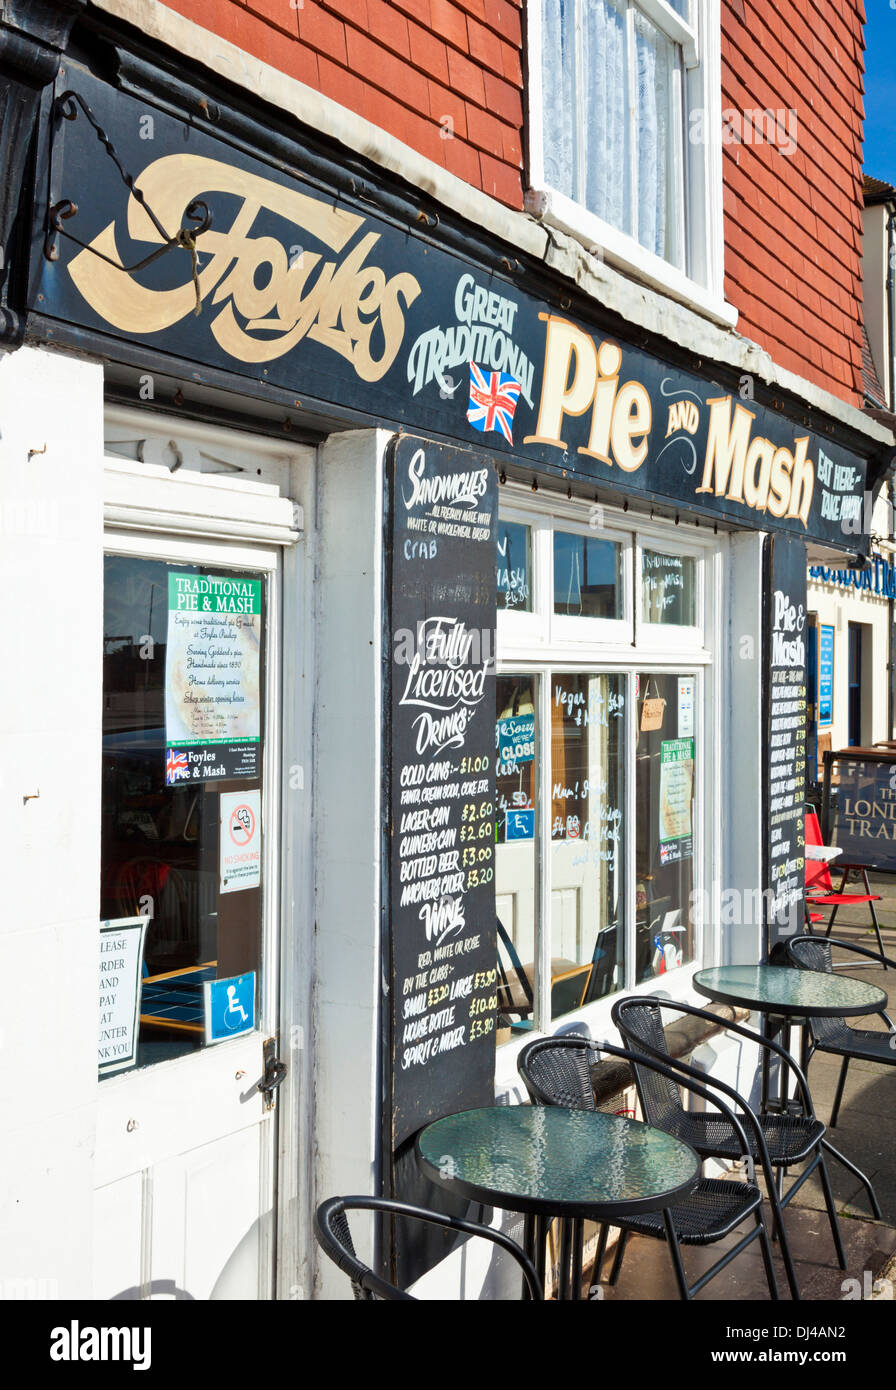 Tarte Foyles et Mash shop café sur le front de mer de Hastings East Sussex England UK GB EU Europe Banque D'Images